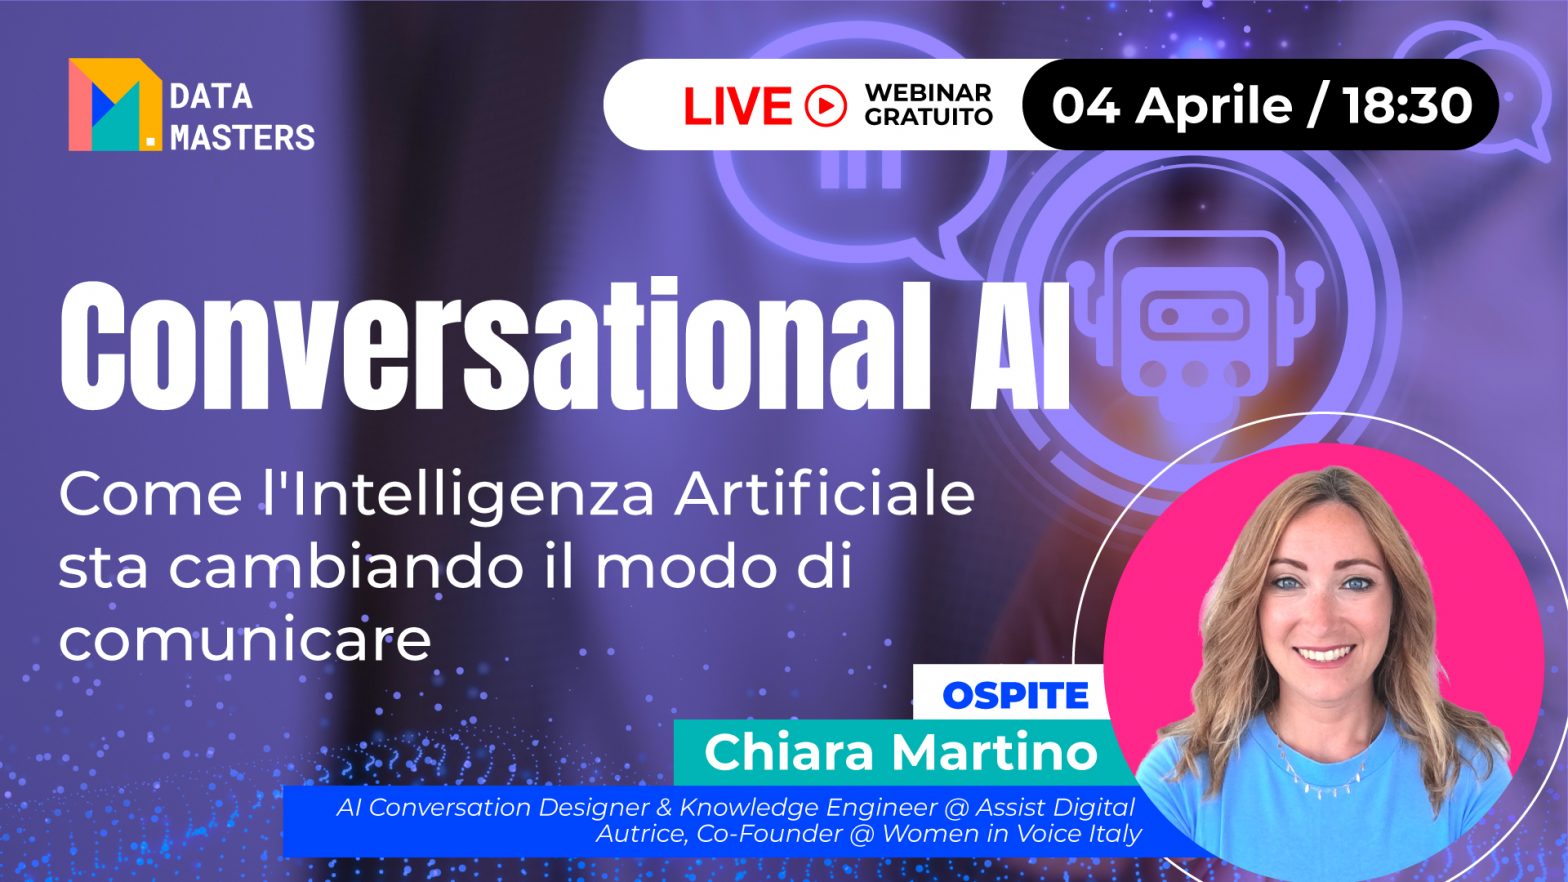 Live gratuita "Conversational AI" con ospite Chiara Martino, AI Convesation Designer e co-fondatrice di Women in Voice Italy, il 4 aprile